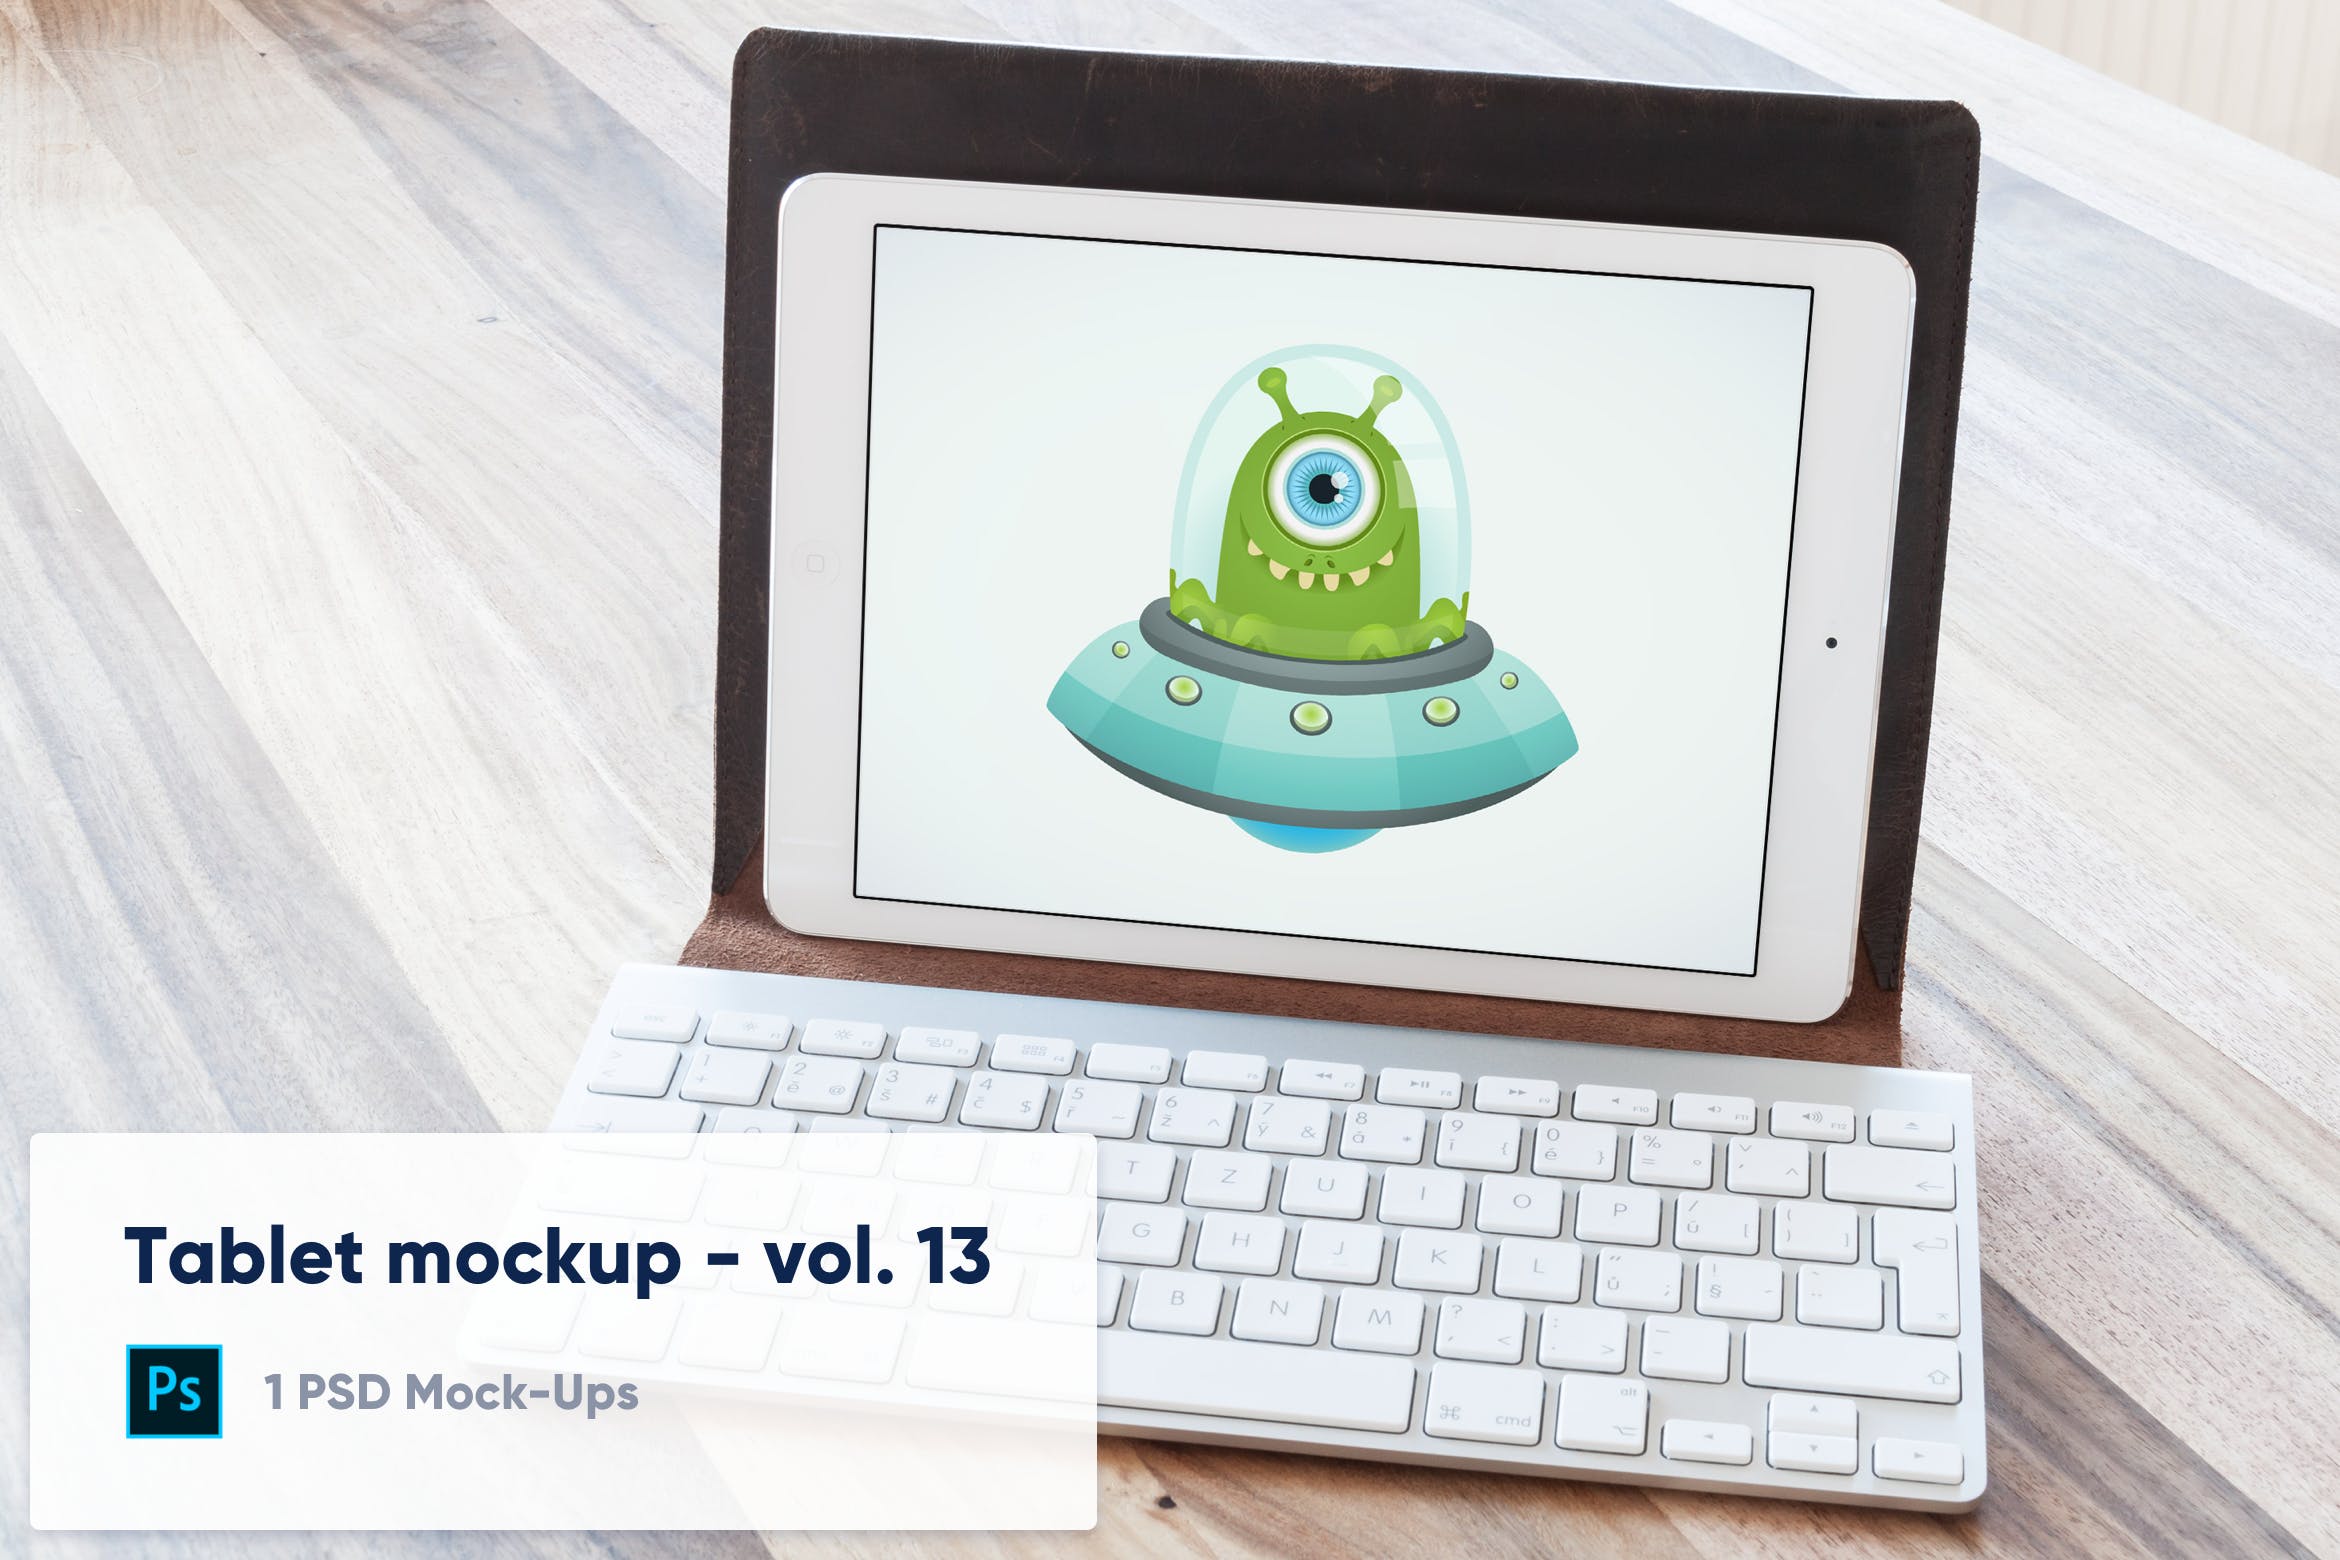 附带键盘套的iPad平板电脑屏幕预览非凡图库精选样机模板v13 Tablet in Keyboard Case Desk Mockup – Vol. 13插图